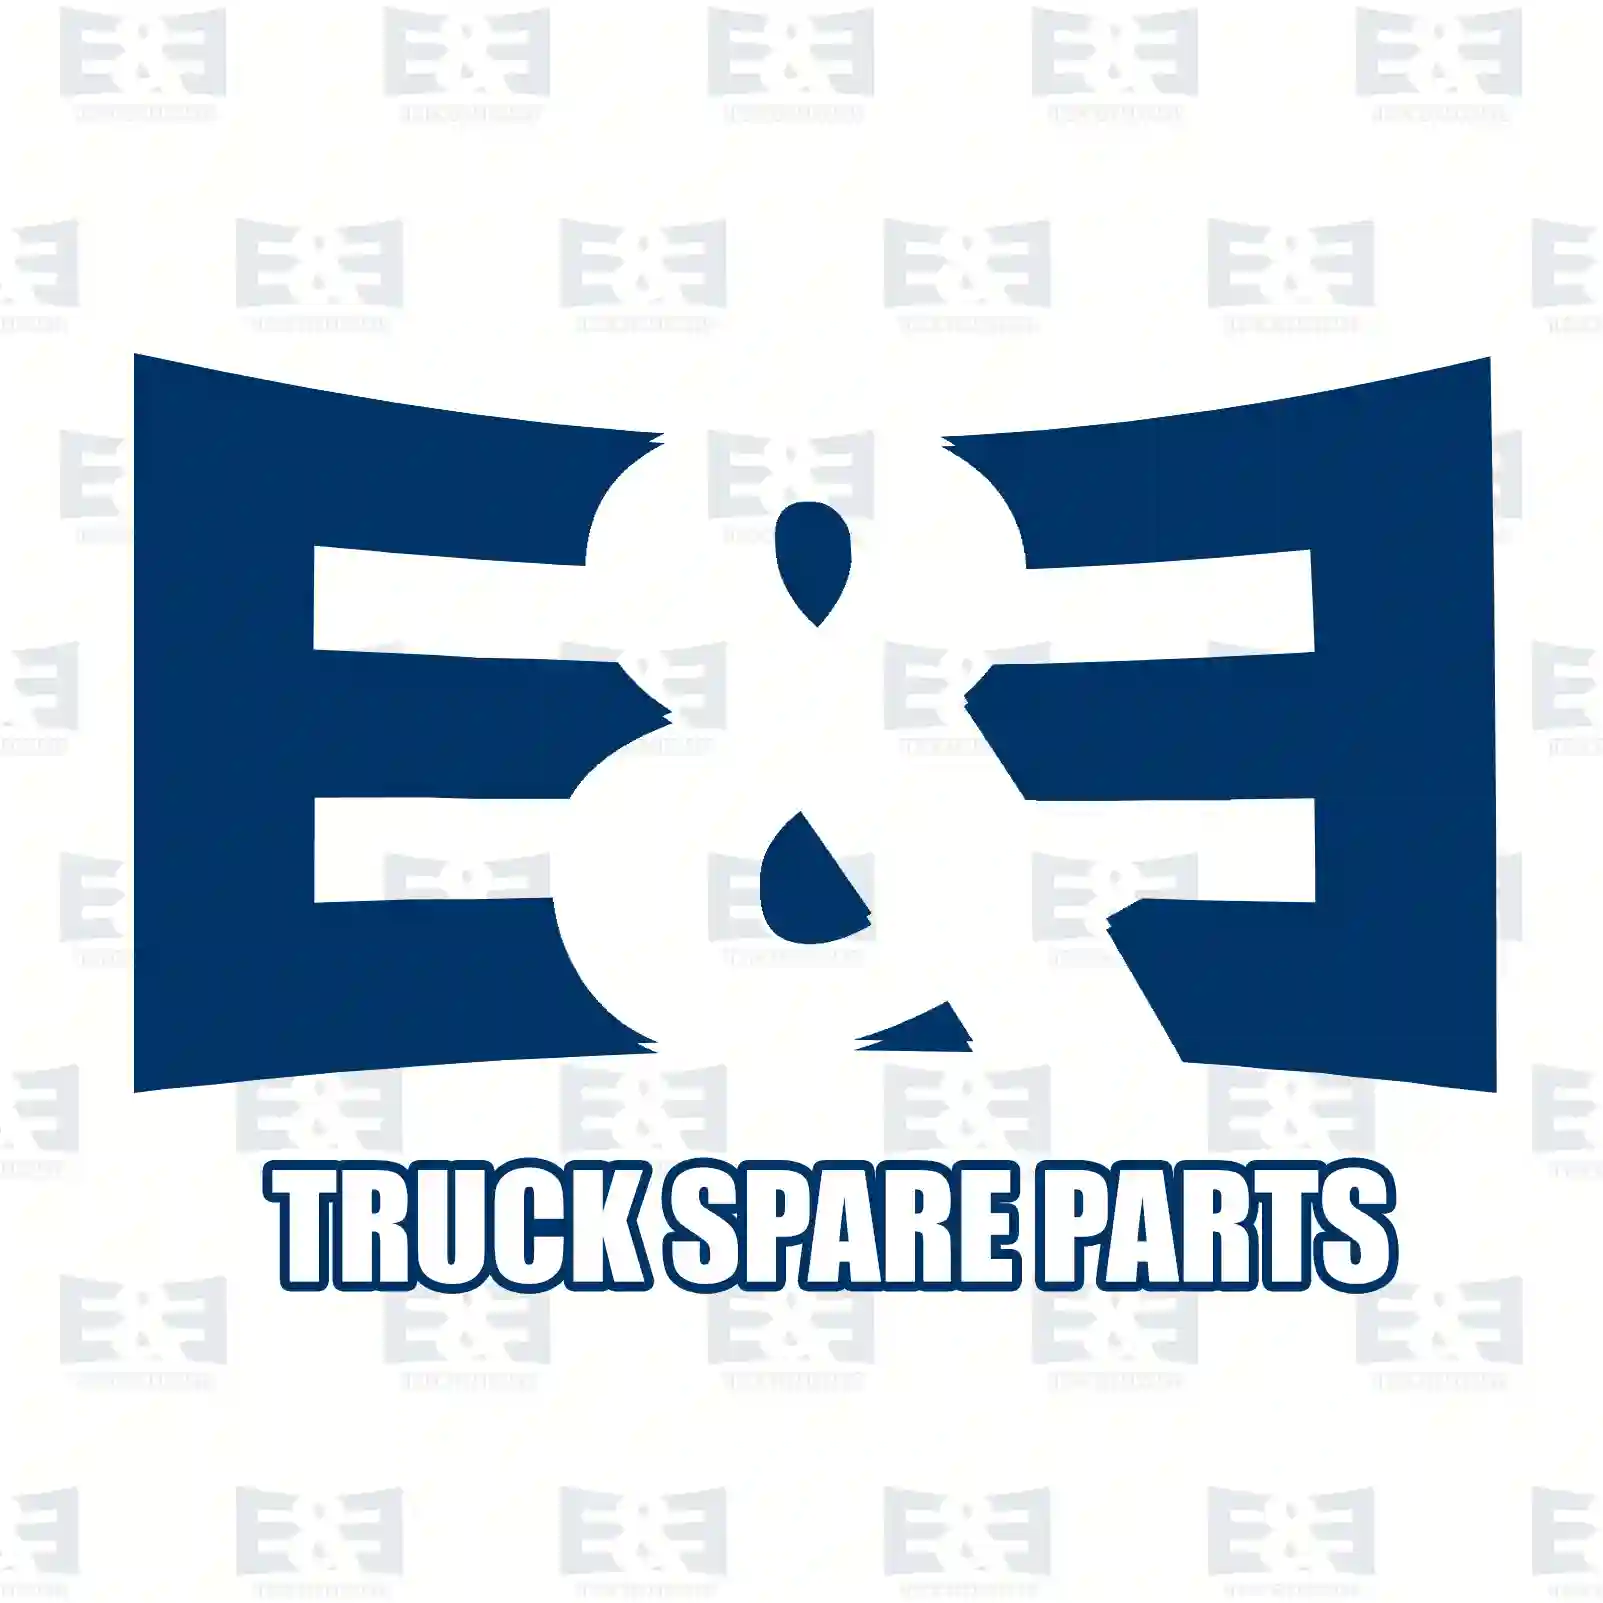 Push-in-connector, 2E2296850, 6718125303 ||  2E2296850 E&E Truck Spare Parts | Truck Spare Parts, Auotomotive Spare Parts Push-in-connector, 2E2296850, 6718125303 ||  2E2296850 E&E Truck Spare Parts | Truck Spare Parts, Auotomotive Spare Parts